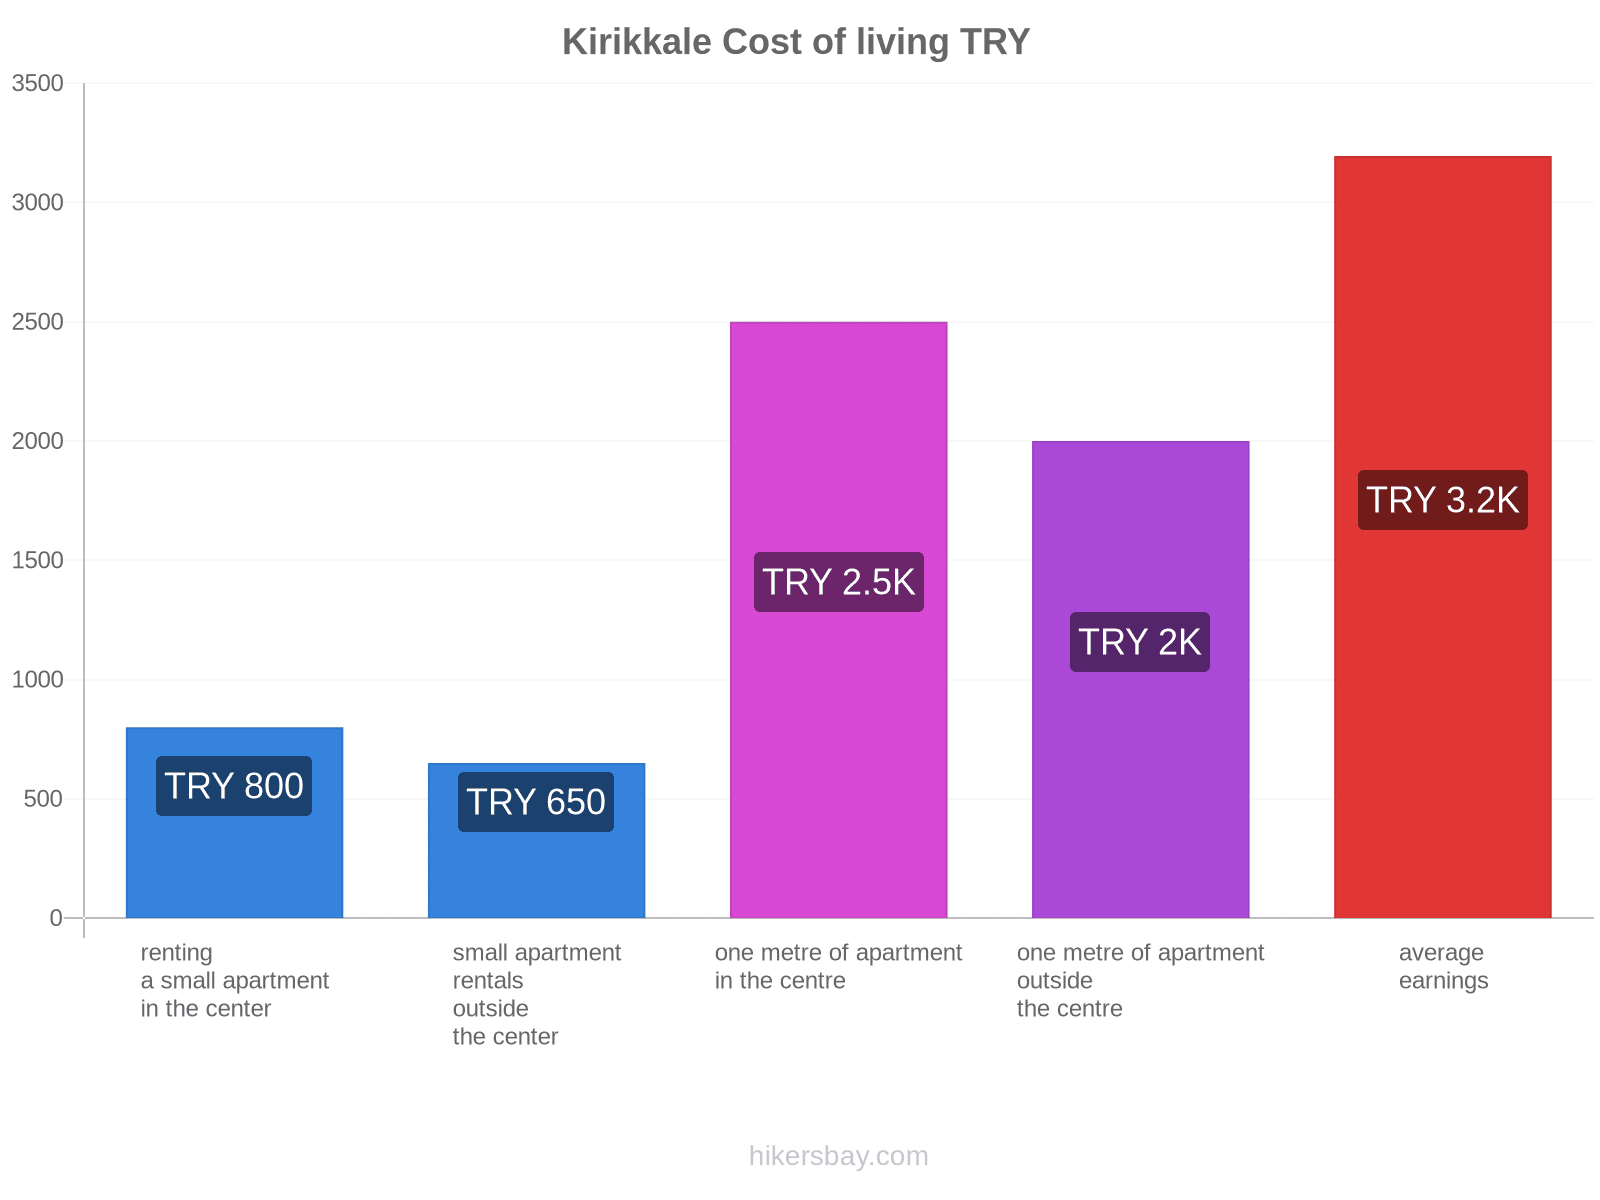 Kirikkale cost of living hikersbay.com